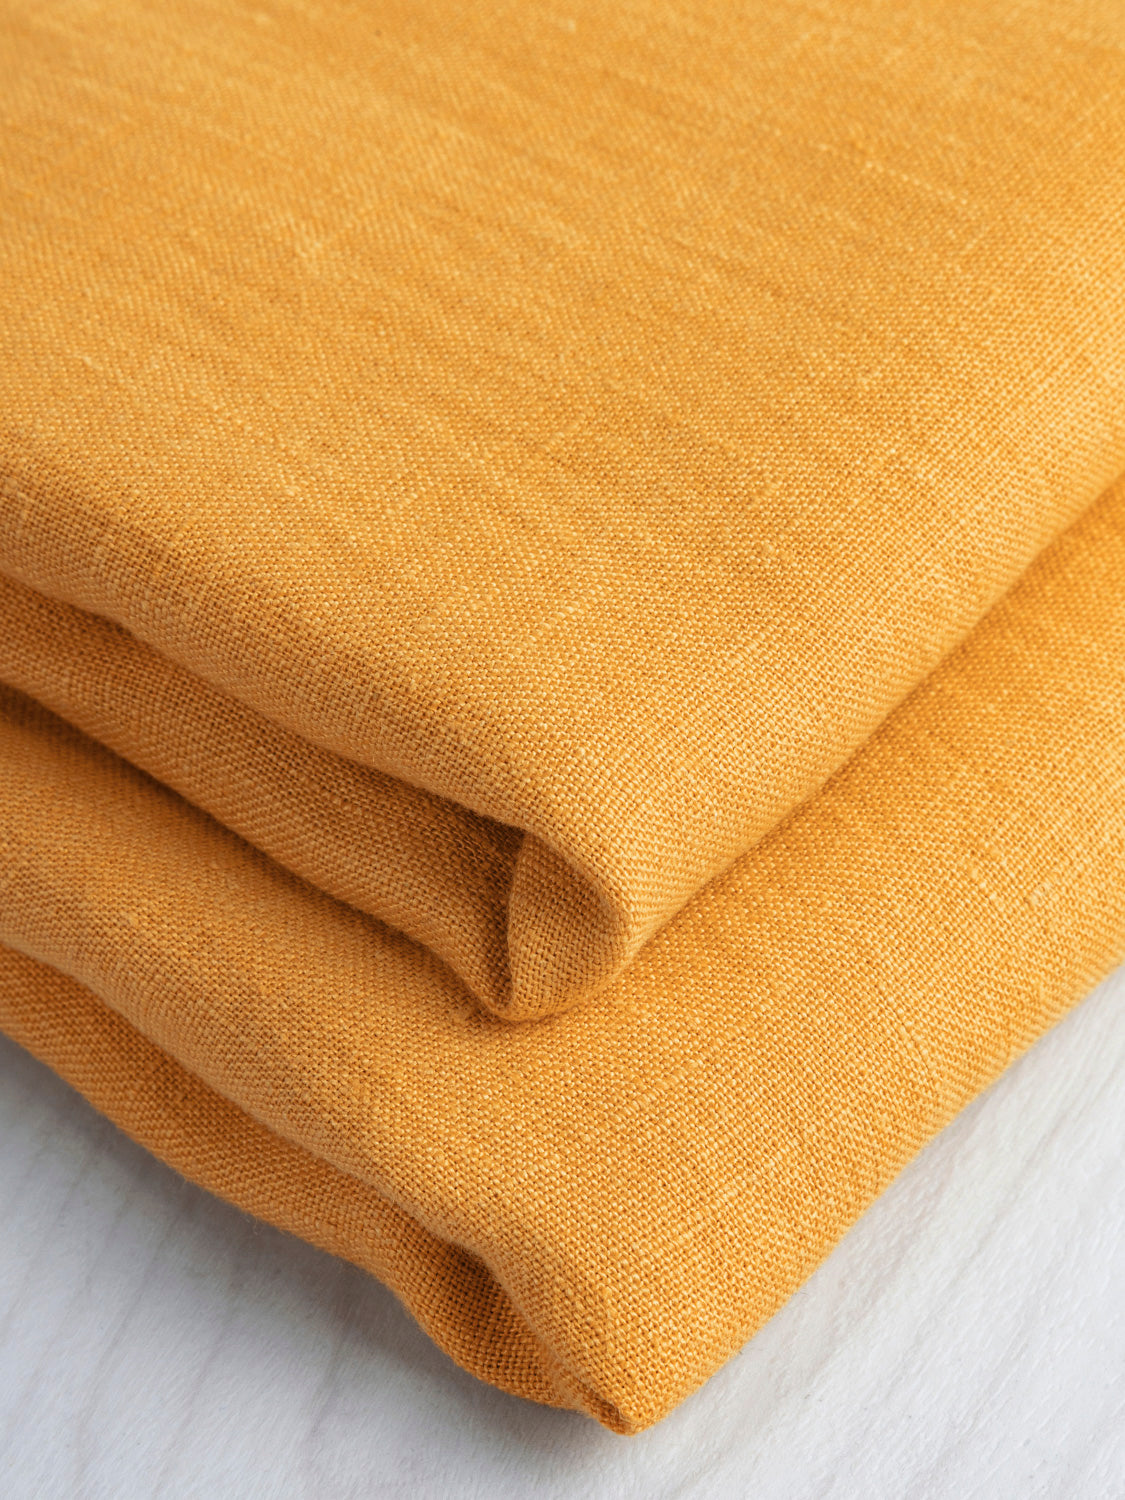 Midweight European Linen - Clementine | Core Fabrics